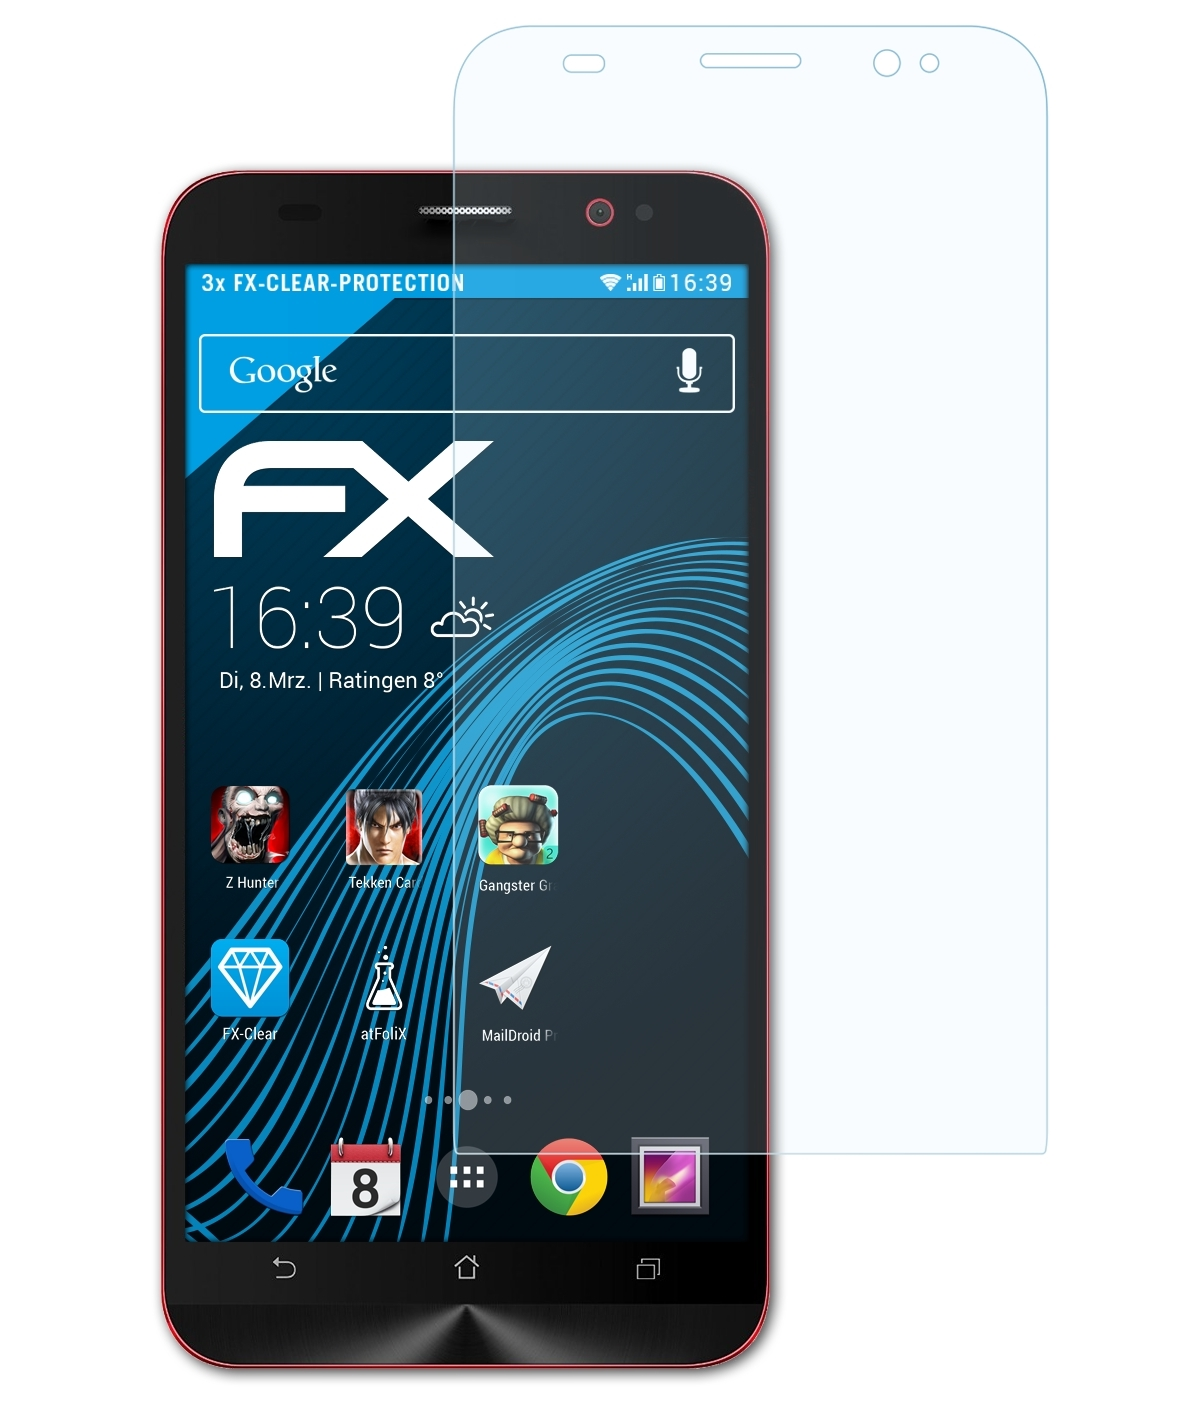 ATFOLIX 2 Deluxe Asus FX-Clear ZenFone Displayschutz(für (ZE550ML/551ML)) 3x